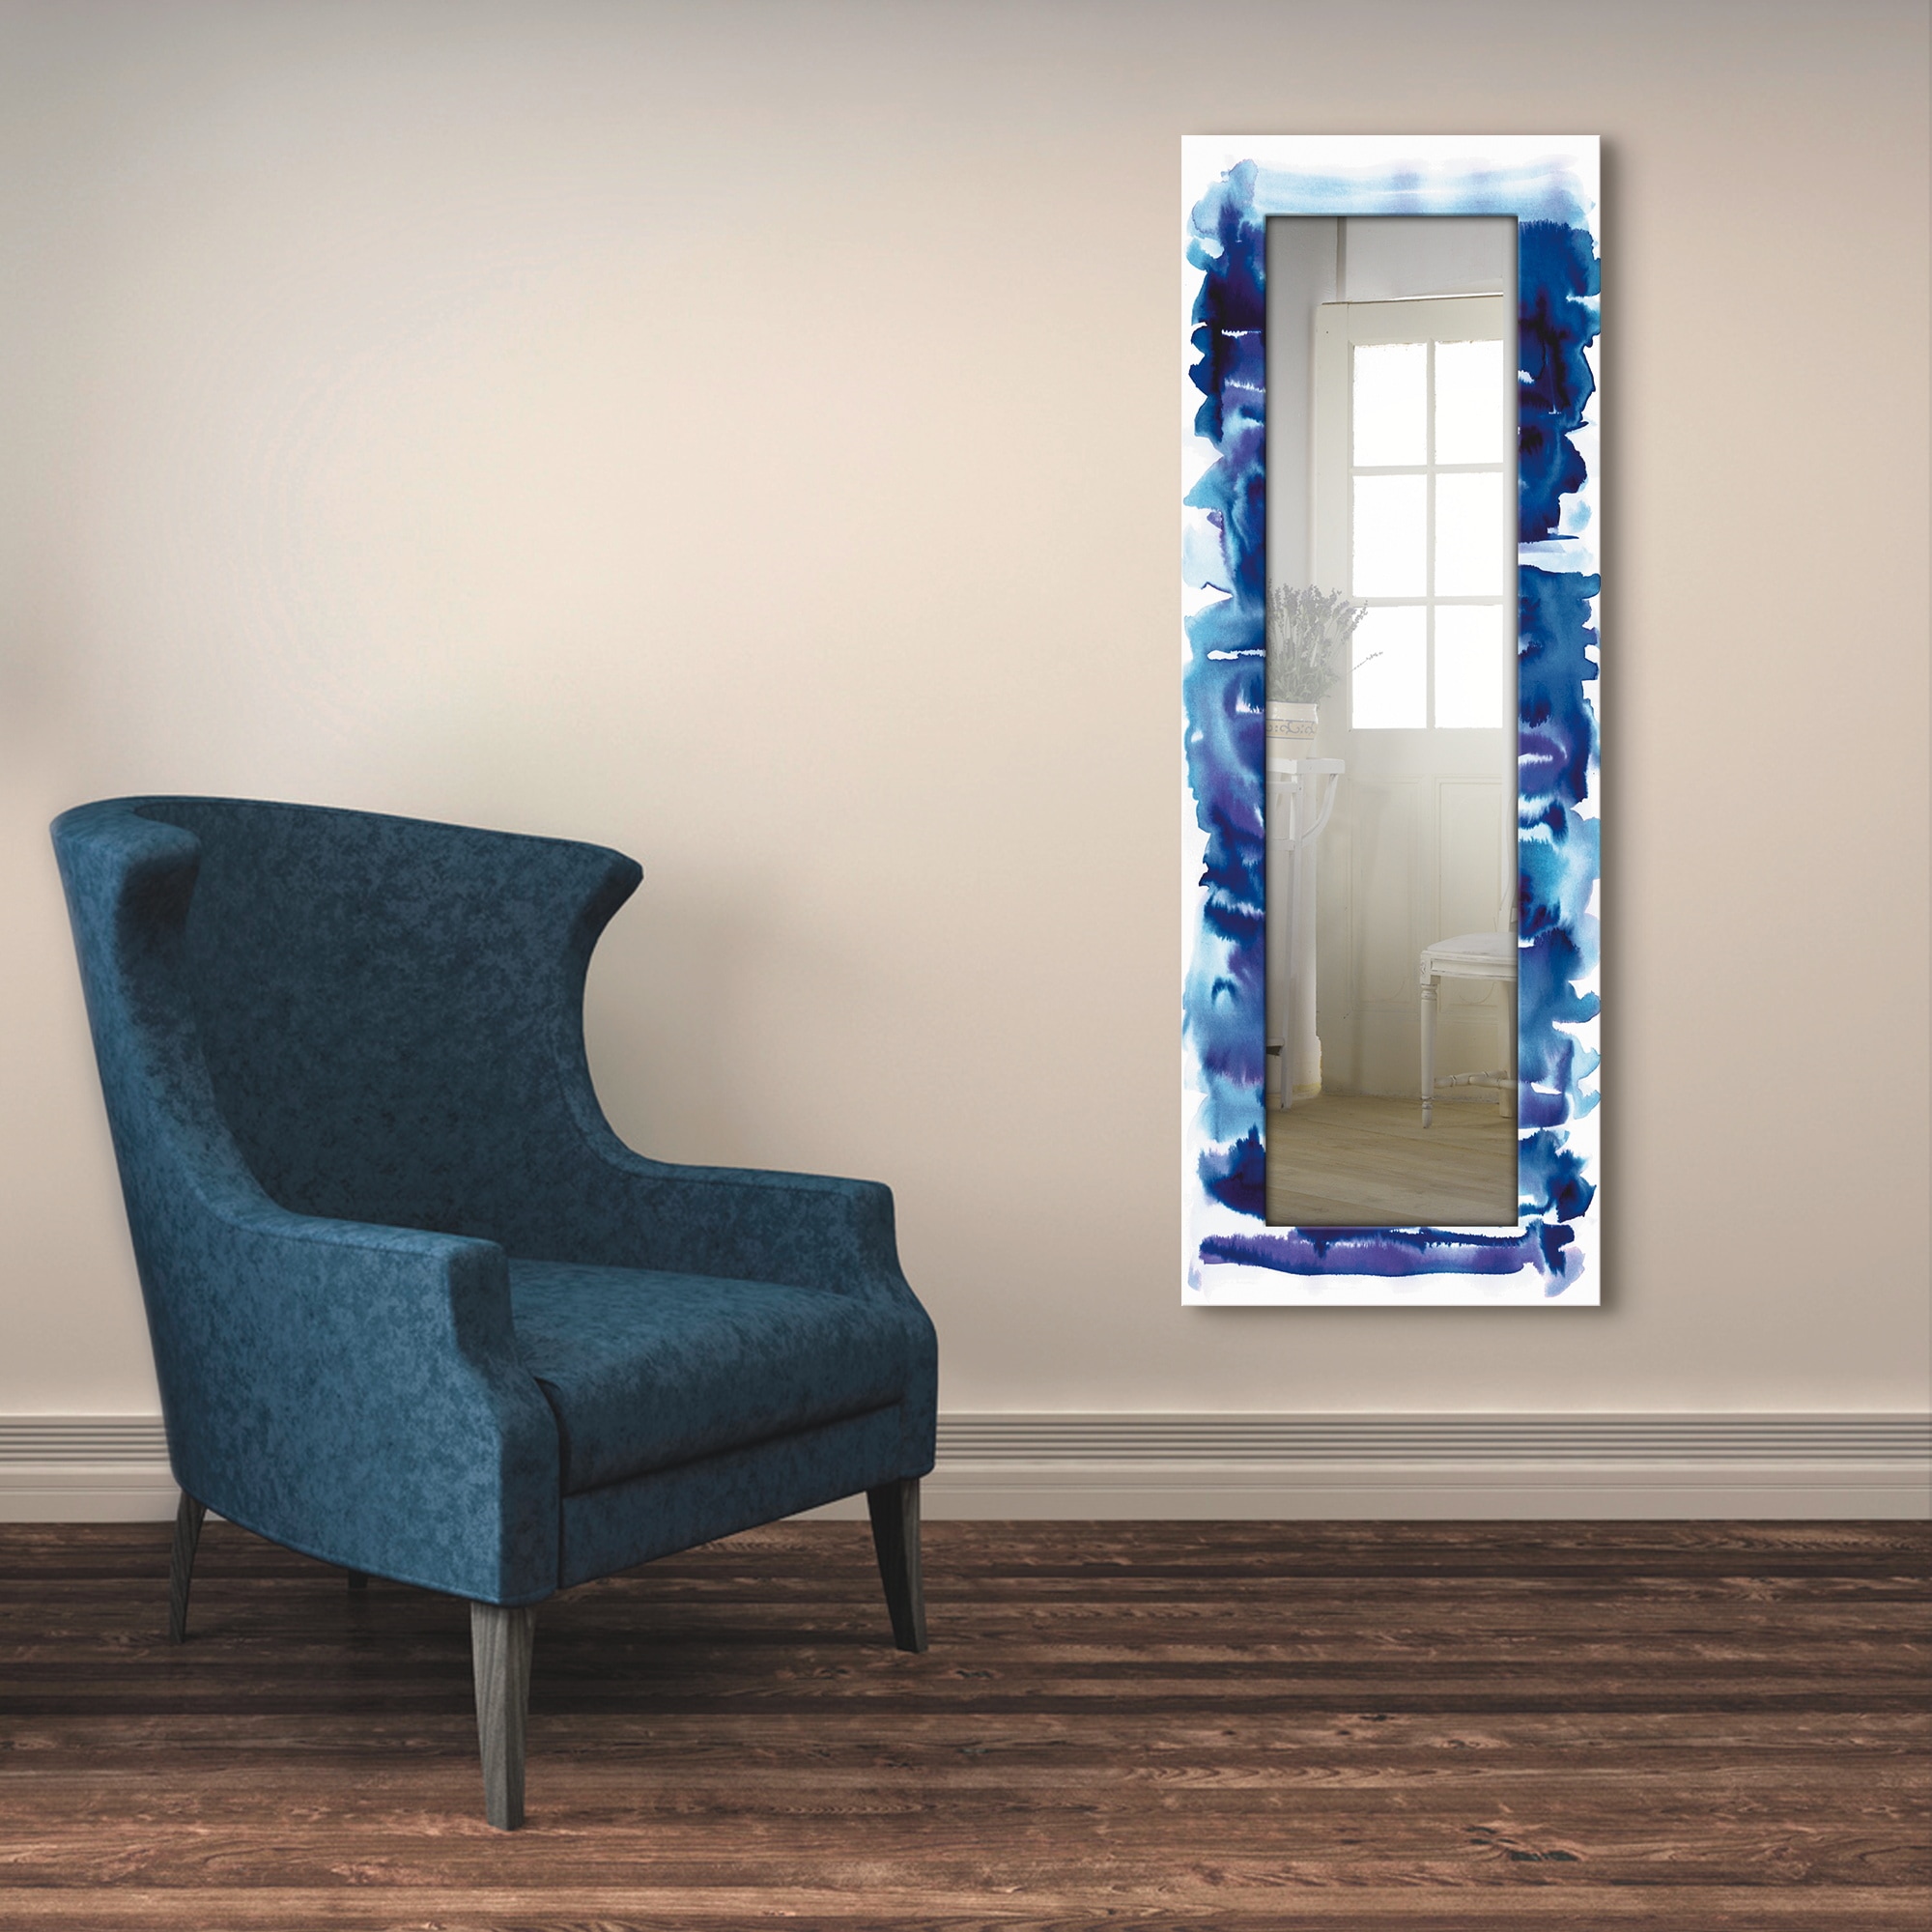 Artland Dekospiegel »Aquarell in blau«, gerahmter Ganzkörperspiegel, Wandspiegel, mit Motivrahmen, Landhaus